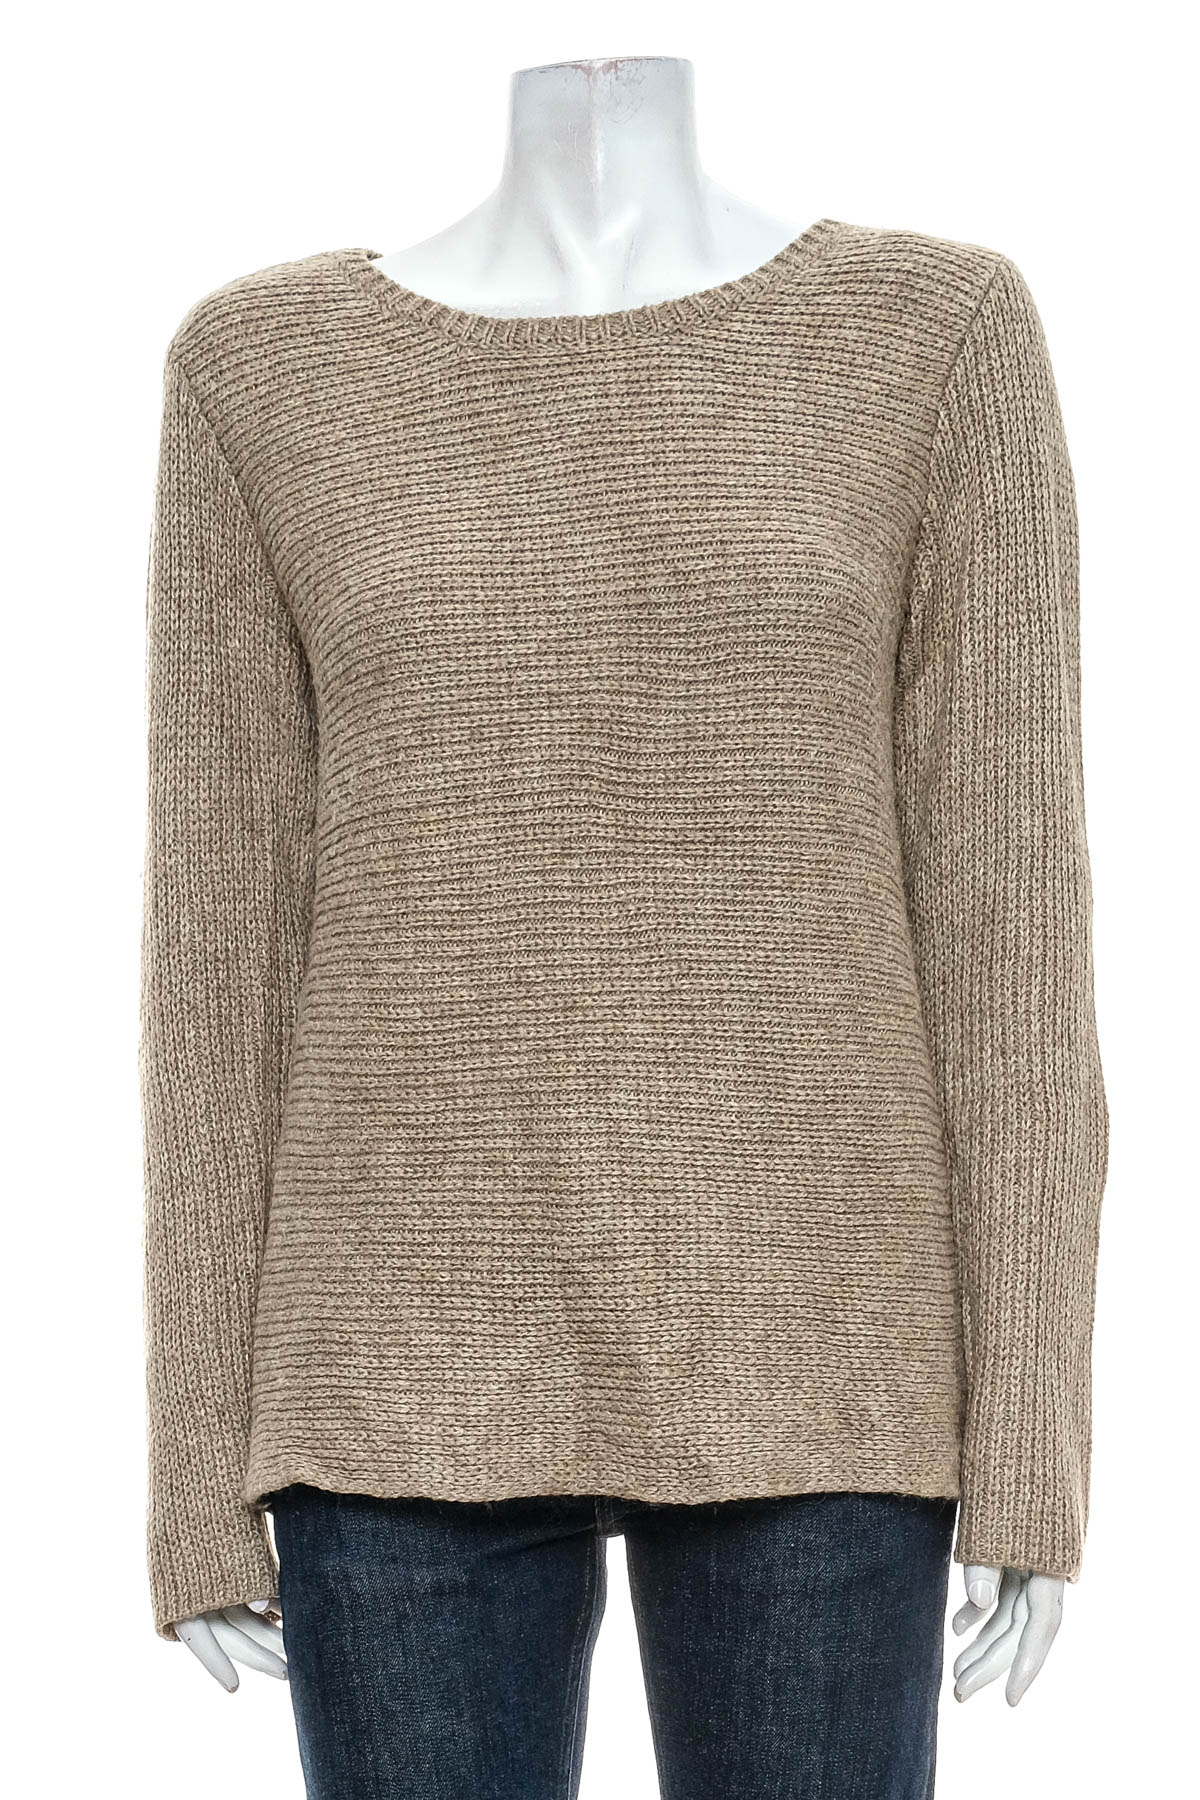 Women's sweater - Street One - 0